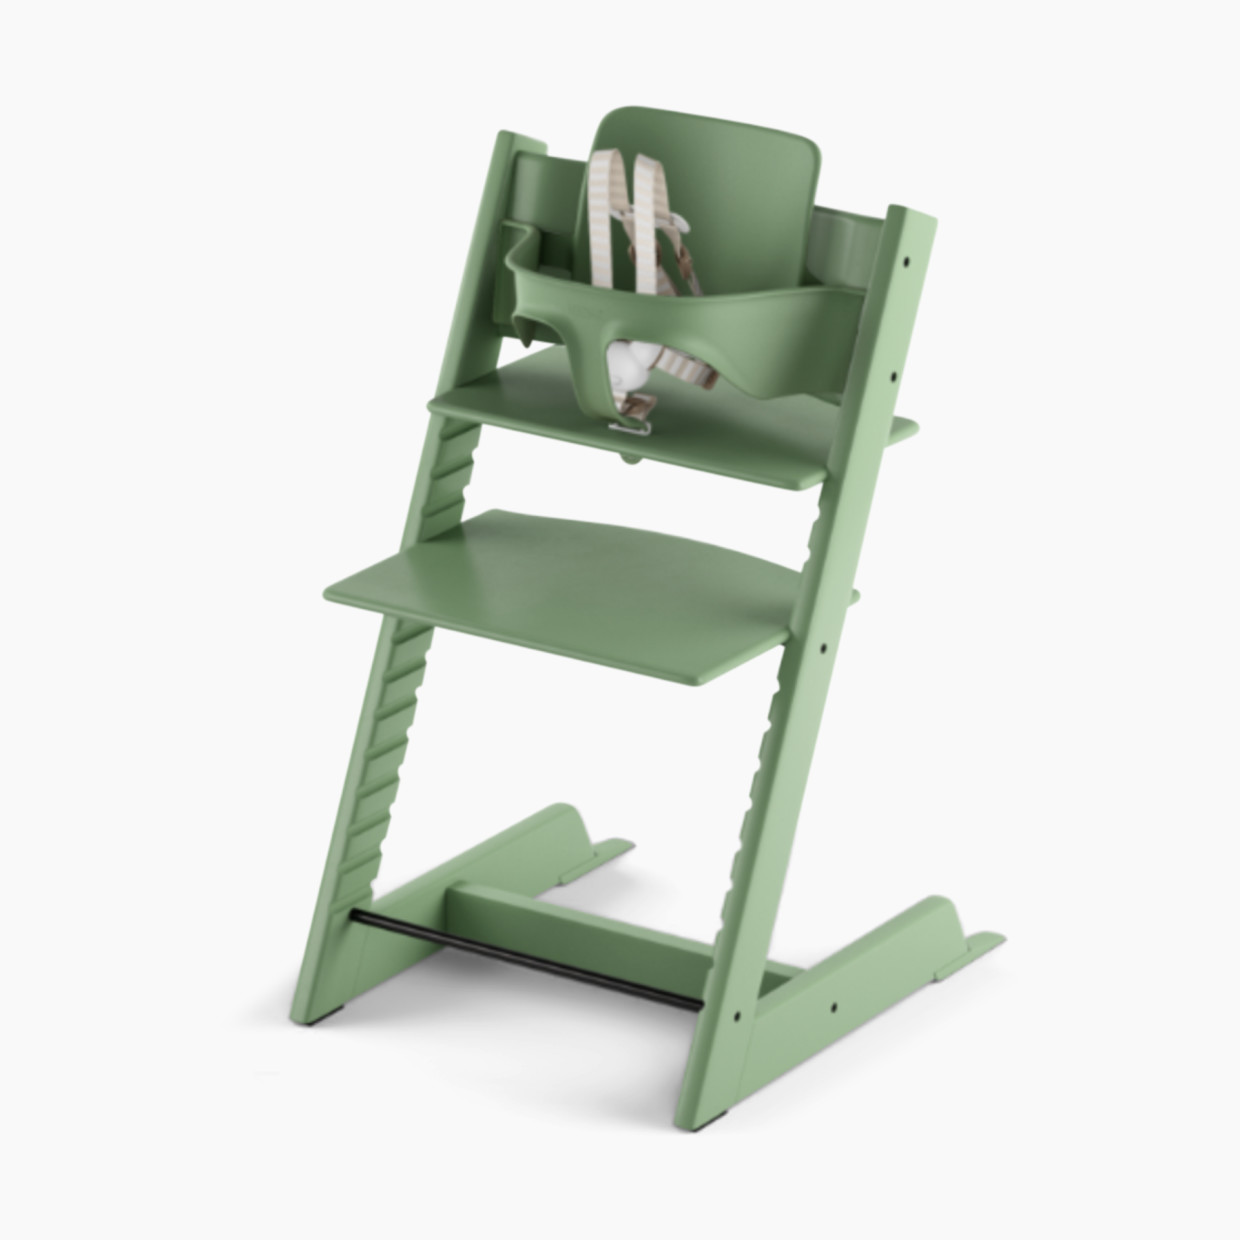 Stokke Tripp Trapp Chair & Baby Set - Moss Green Chair/Moss Green Set.